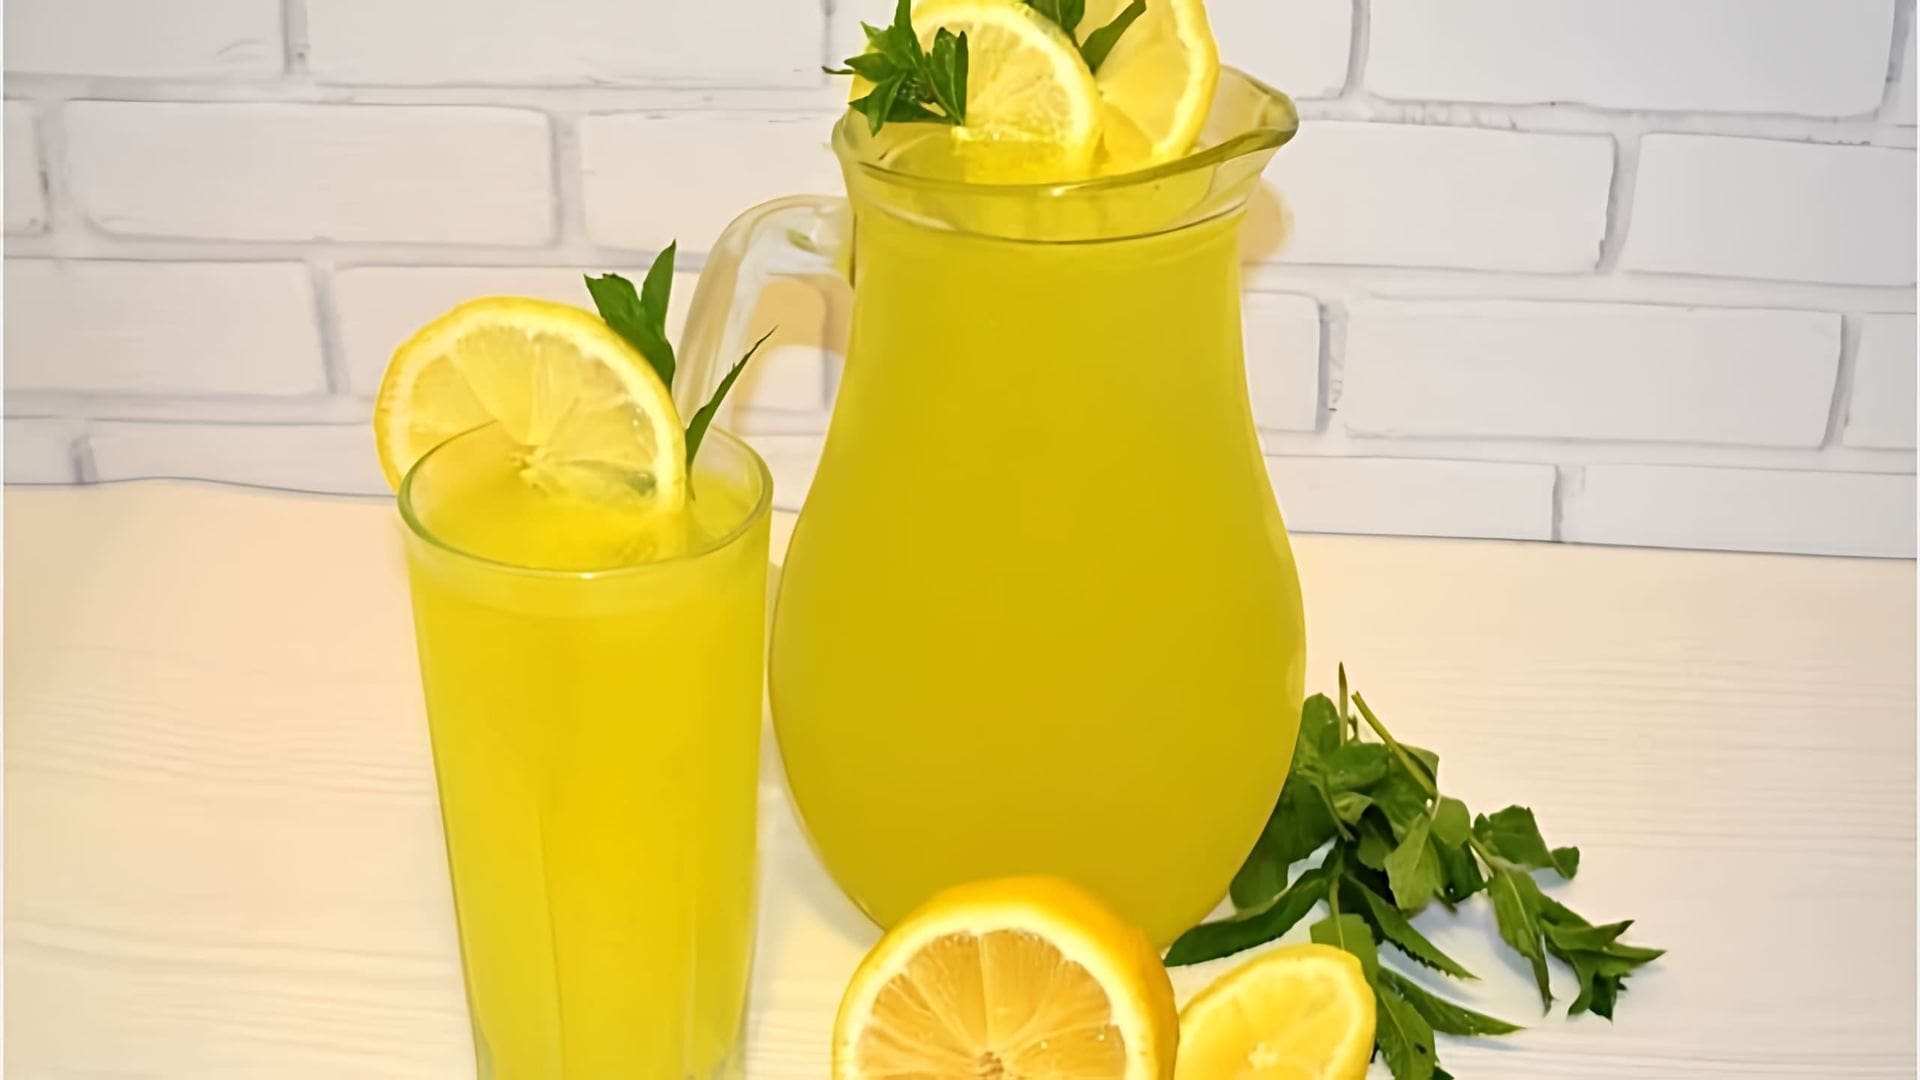 В этом видео Елена показывает, как приготовить натуральный турецкий лимонад, который отлично утоляет жажду в жаркие летние дни